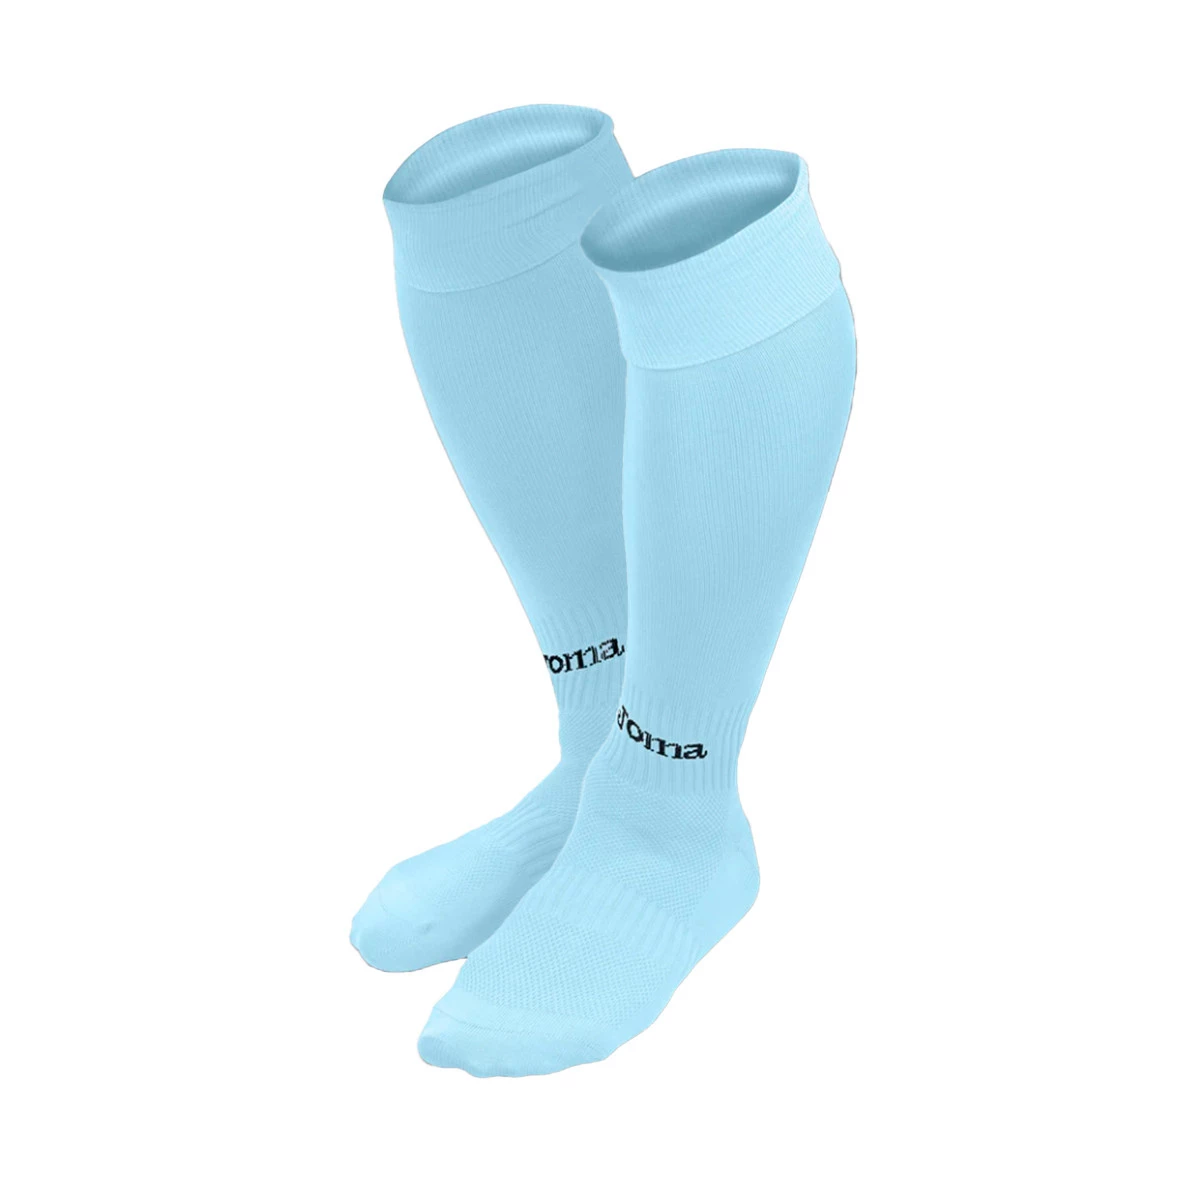 Calcetines personalizados con nombre, añade tu nombre en los calcetines  personalizados para mujeres y hombres, Multi